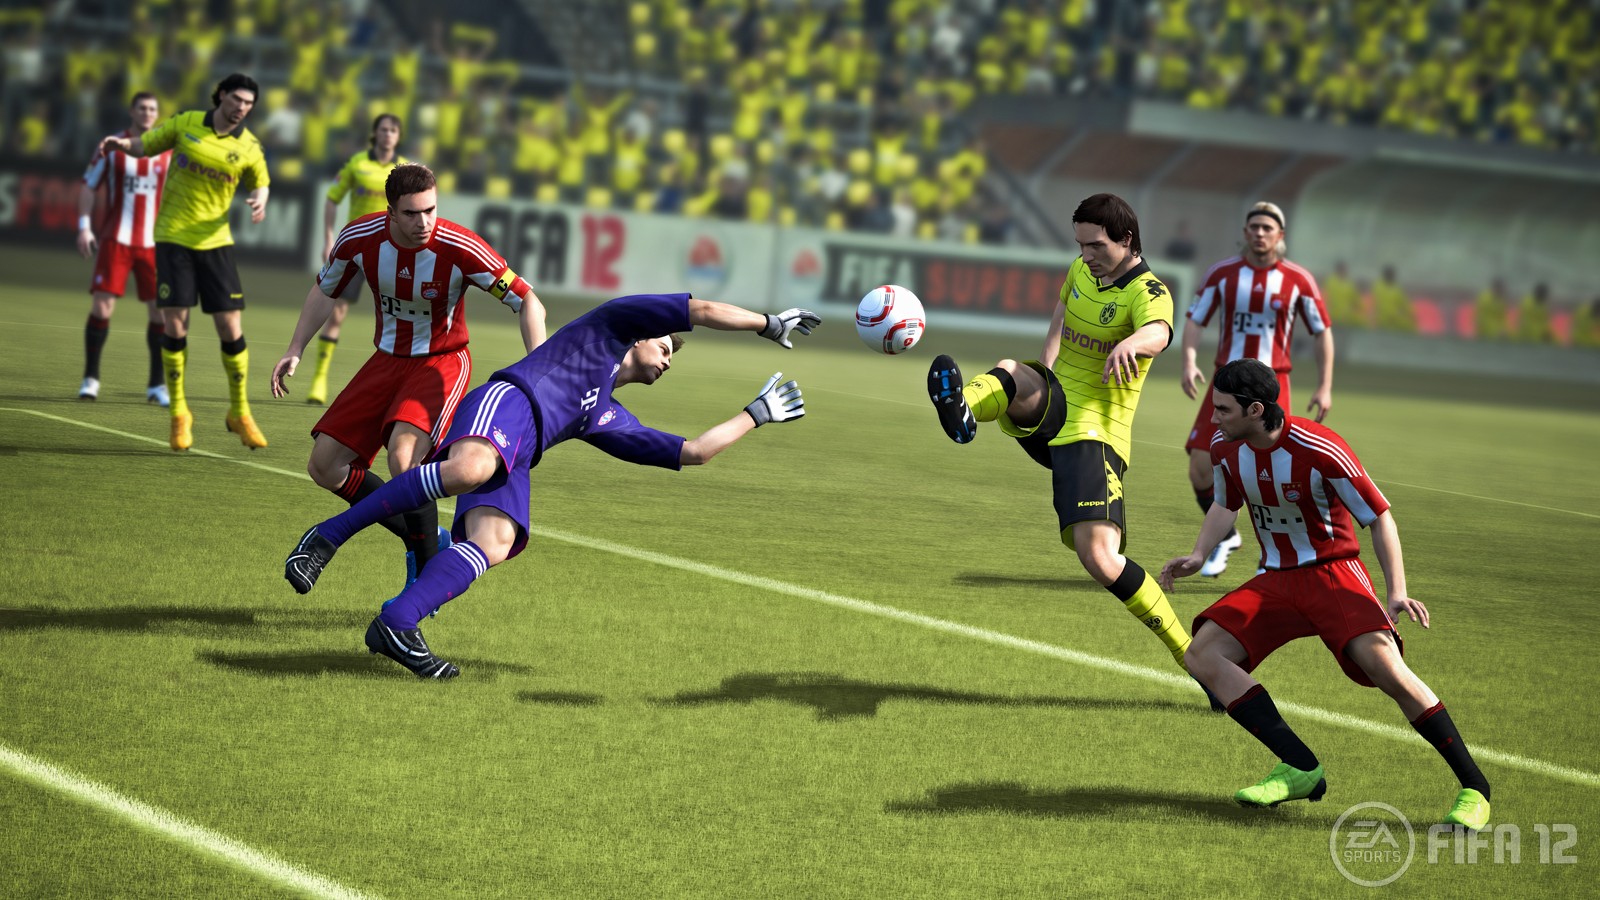 Der neue Cover-Star von FIFA 12: Mats Hummels - das passt zur Überarbeitung des defensiven Sielablaufs.